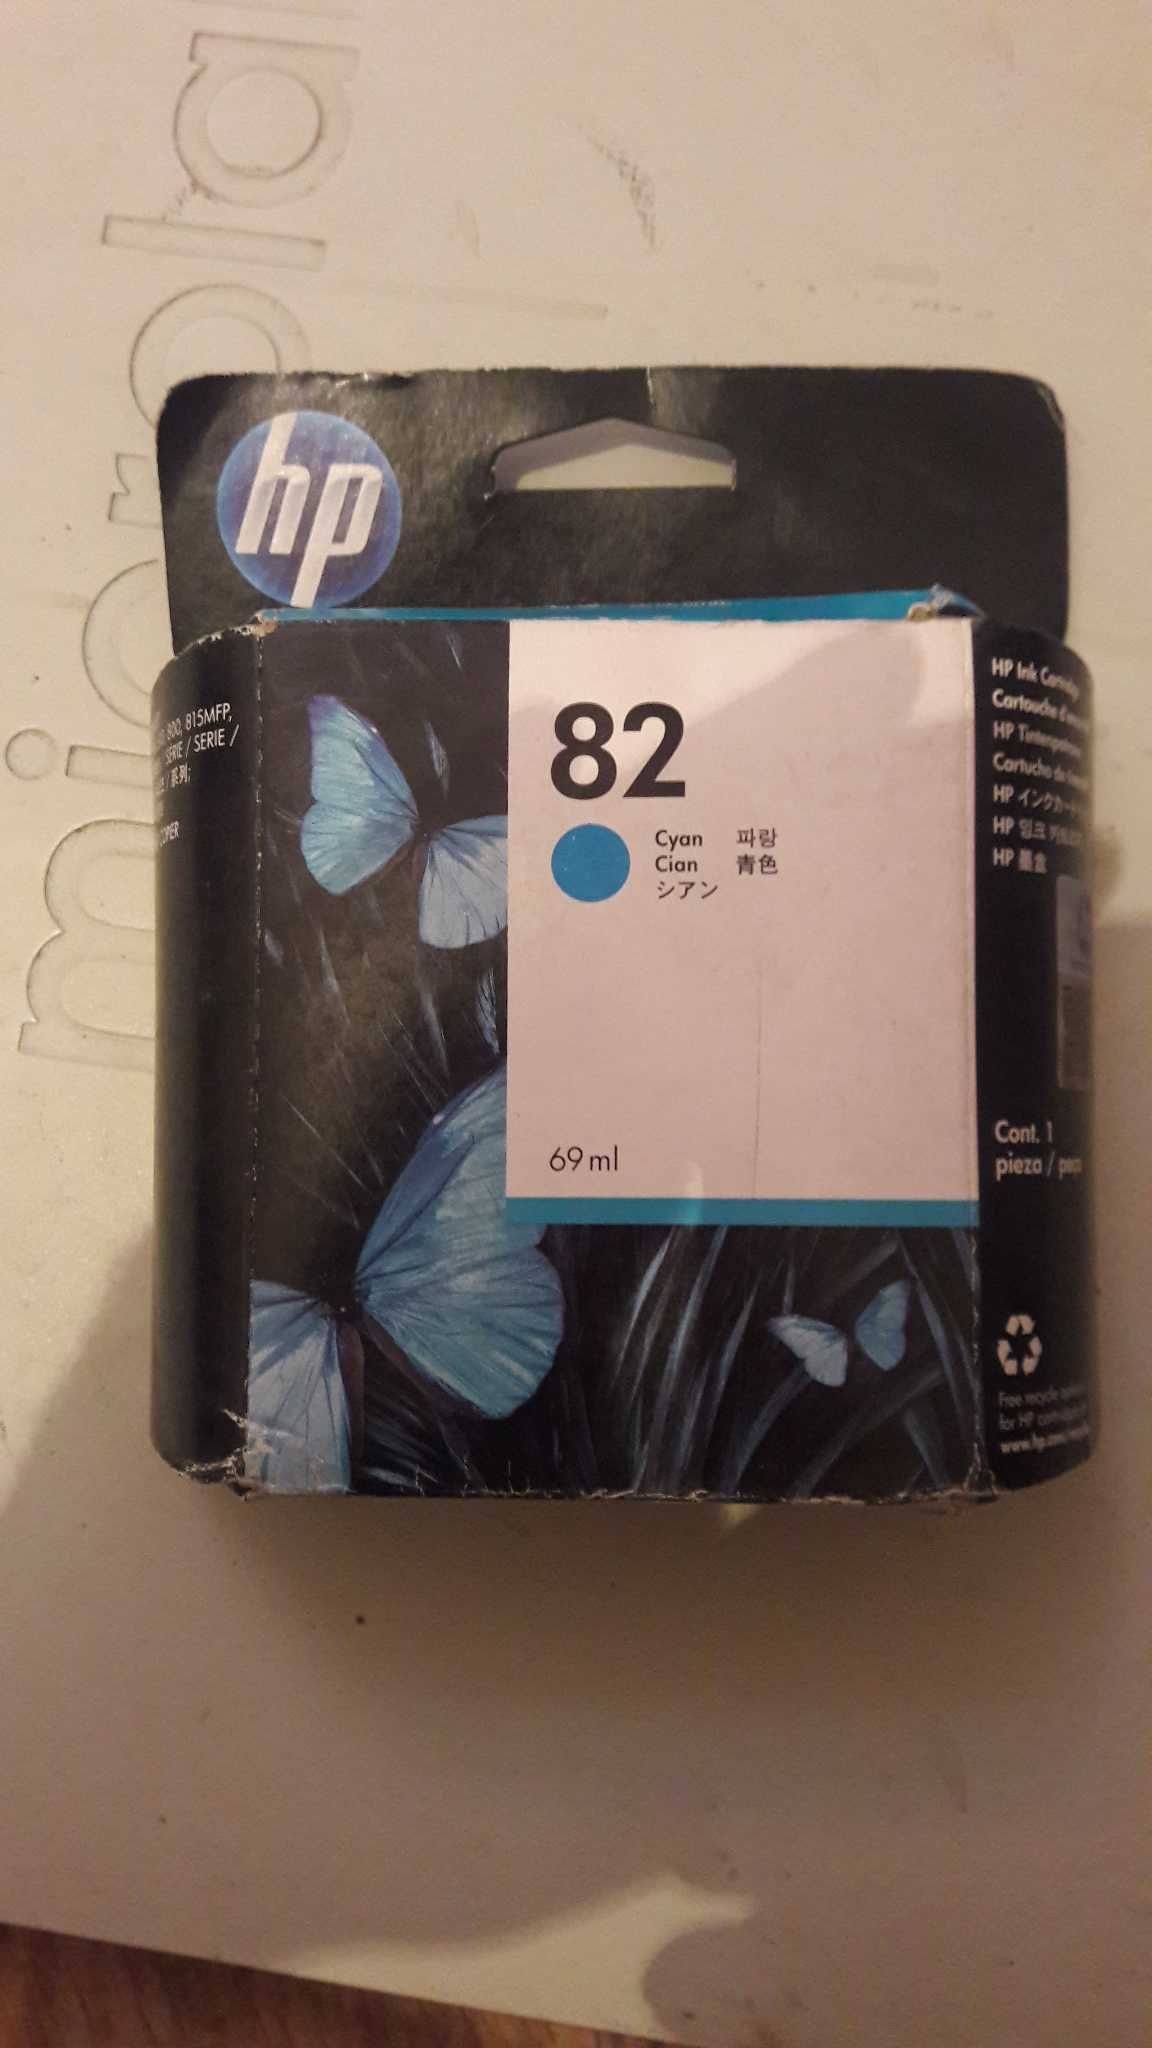 Новые cтруйные картриджи "HP"